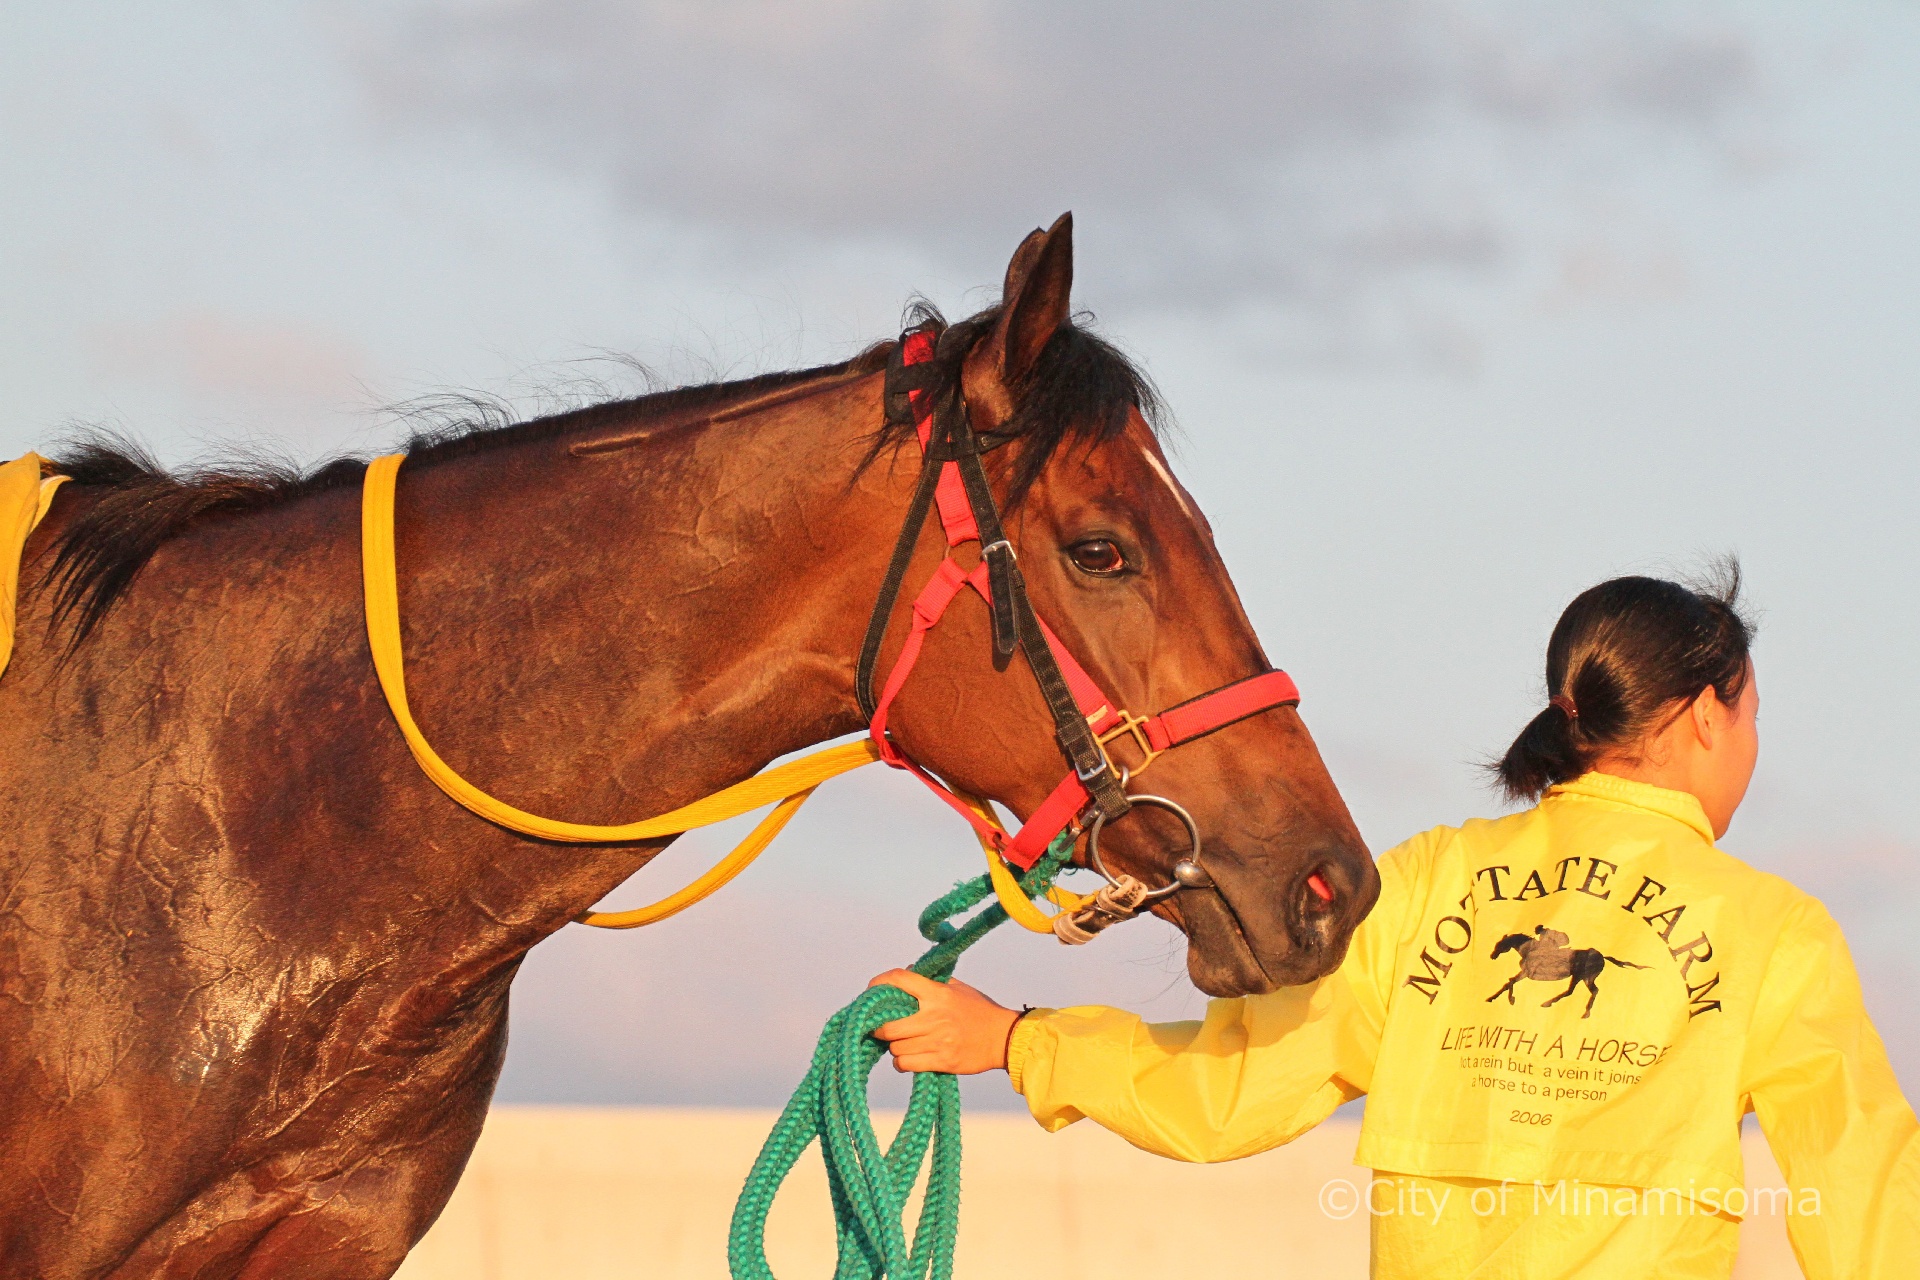 烏崎海岸での早朝錬馬の様子。早朝の練習を終え、帰ろうとする人と馬。馬を引く人は鮮やかな黄色のスタッフジャンパーを着ている。